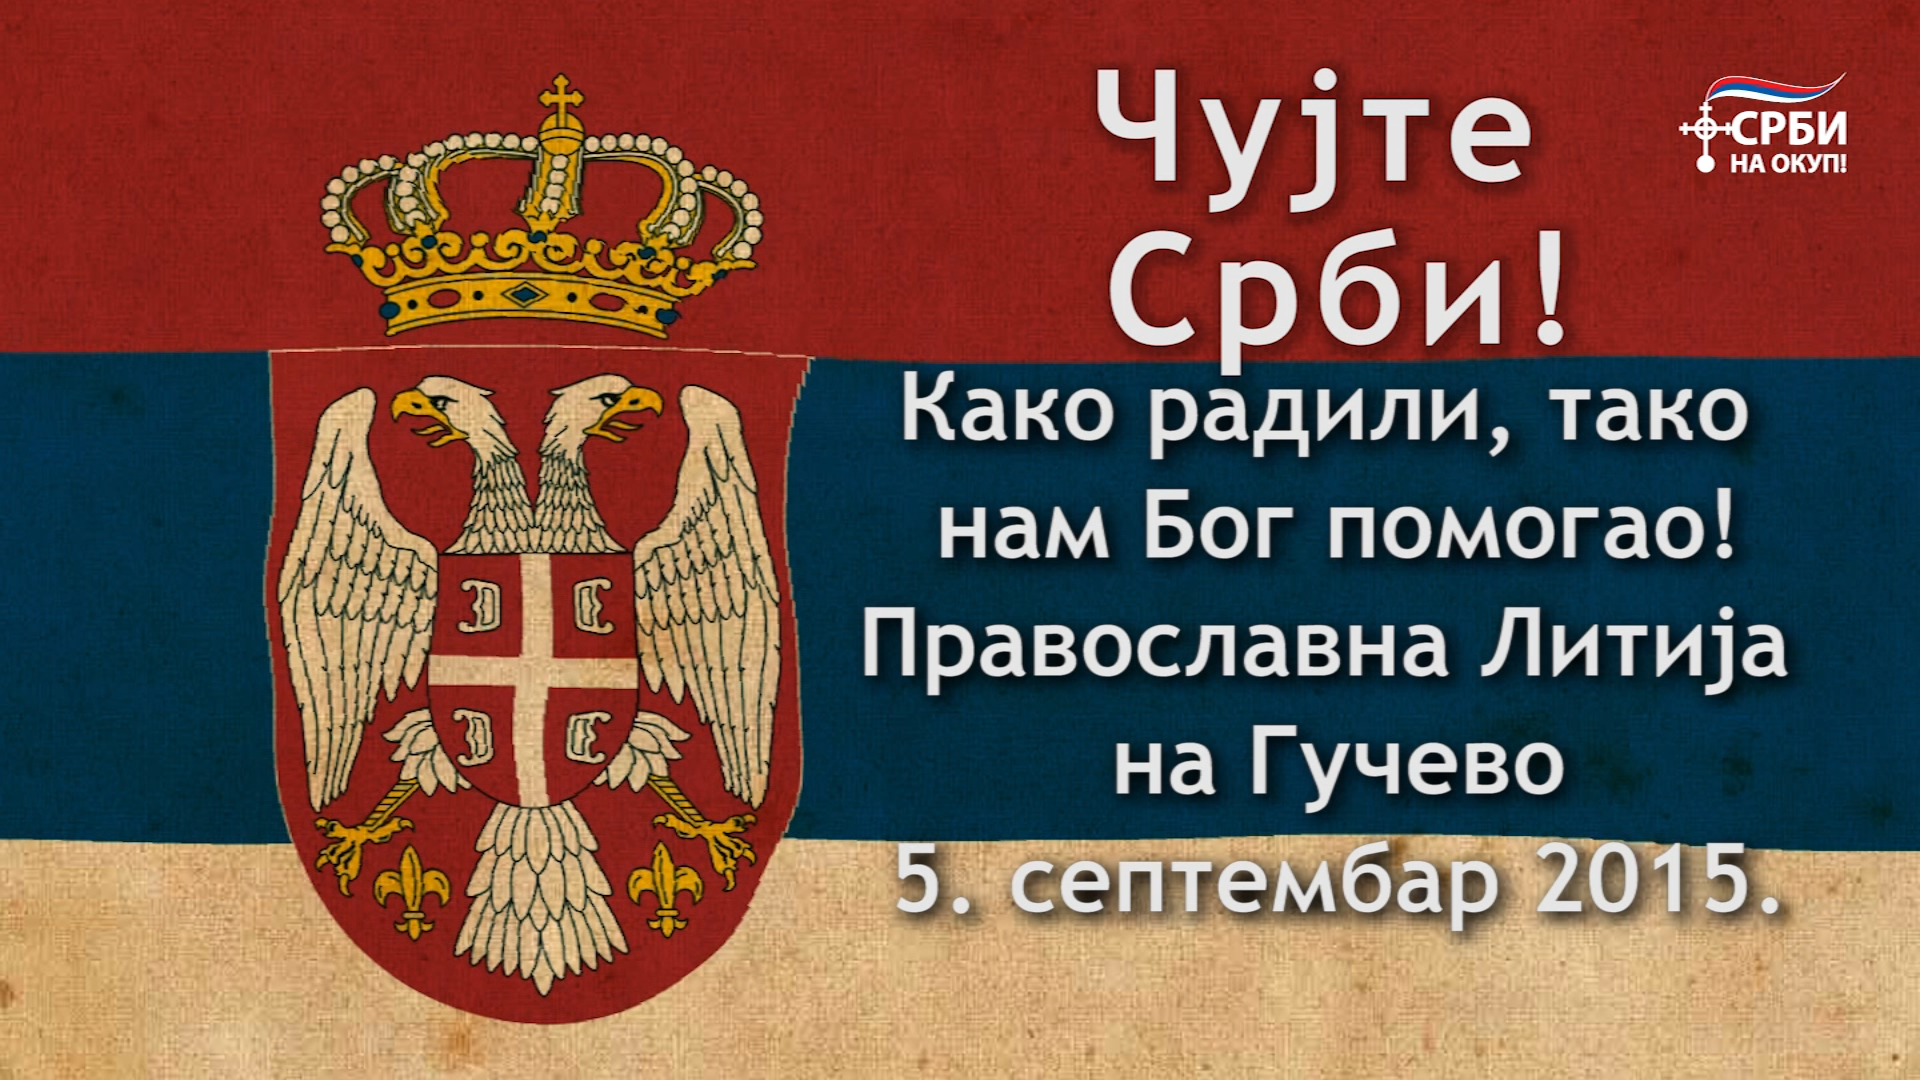 Чујте Срби! – Православна Литија на Гучево